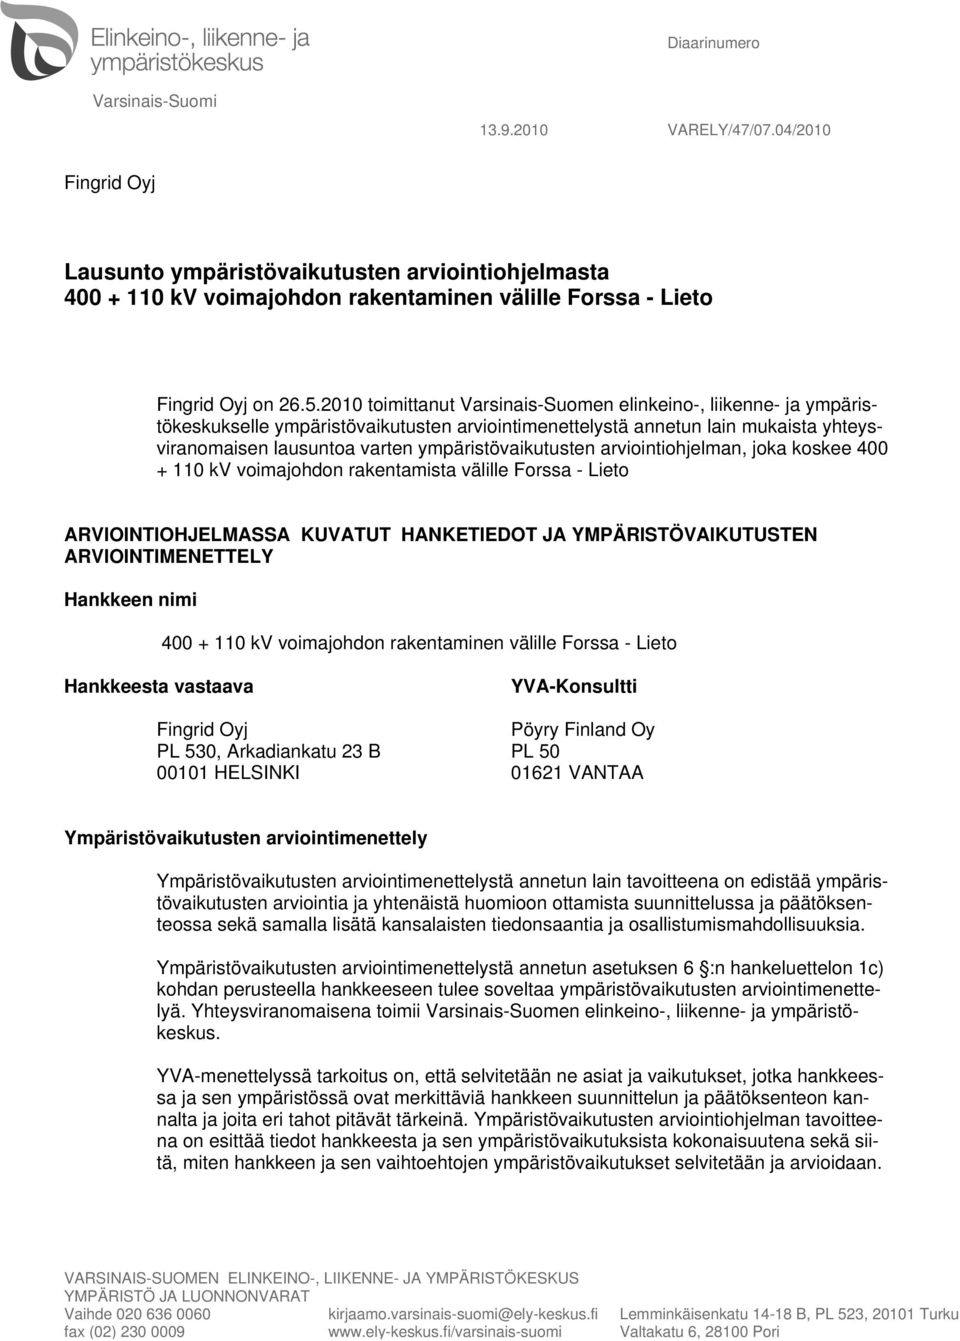 2010 toimittanut Varsinais-Suomen elinkeino-, liikenne- ja ympäristökeskukselle ympäristövaikutusten arviointimenettelystä annetun lain mukaista yhteysviranomaisen lausuntoa varten